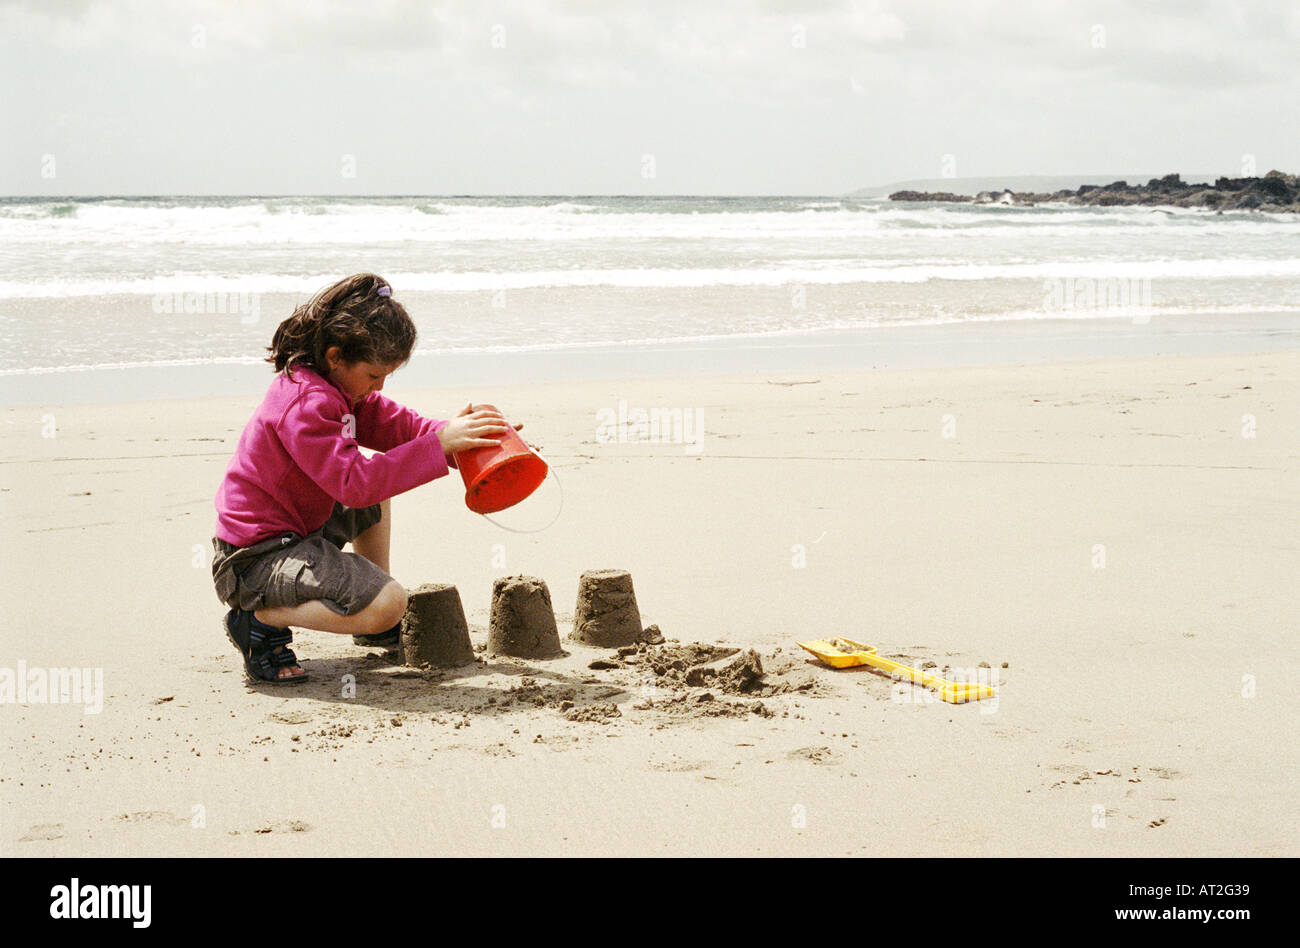 A girl building sand castles on the beach Stock Photo